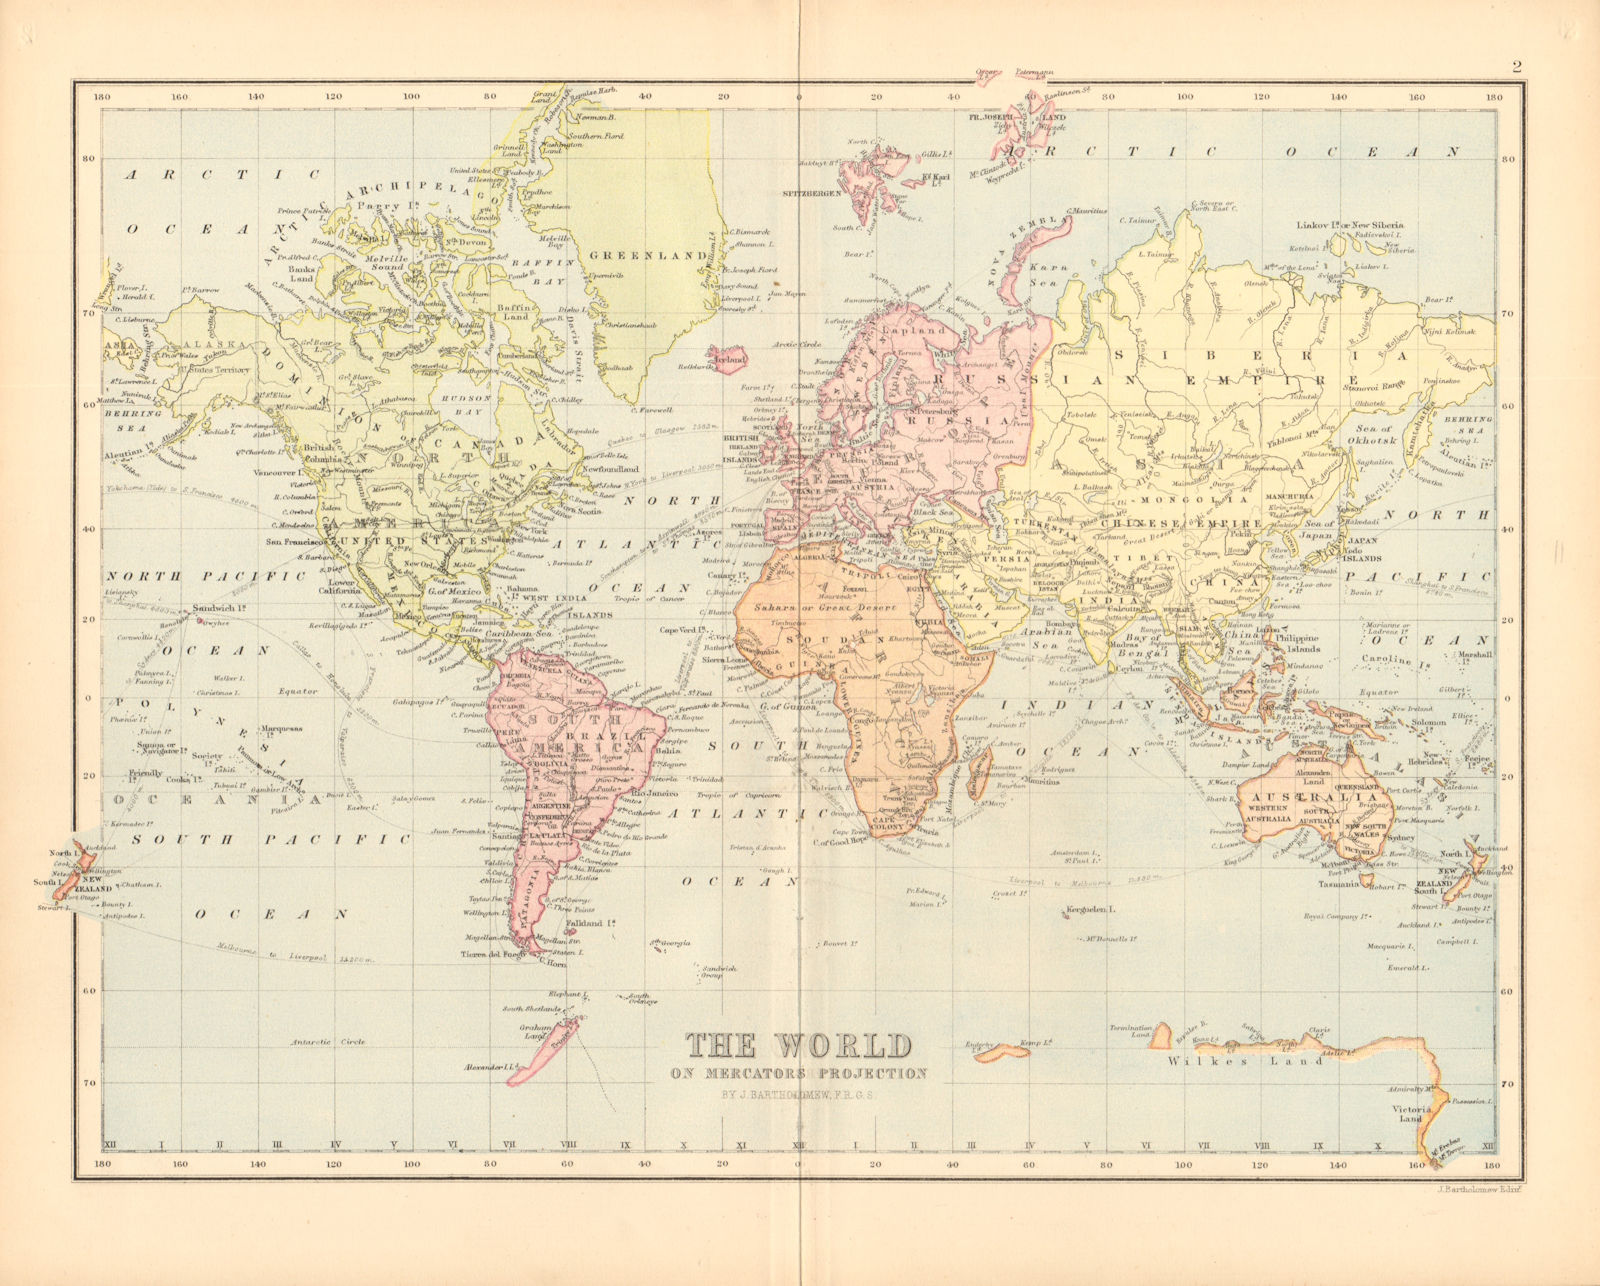 'The World on Mercators Projection'. BARTHOLOMEW 1876 old antique map chart